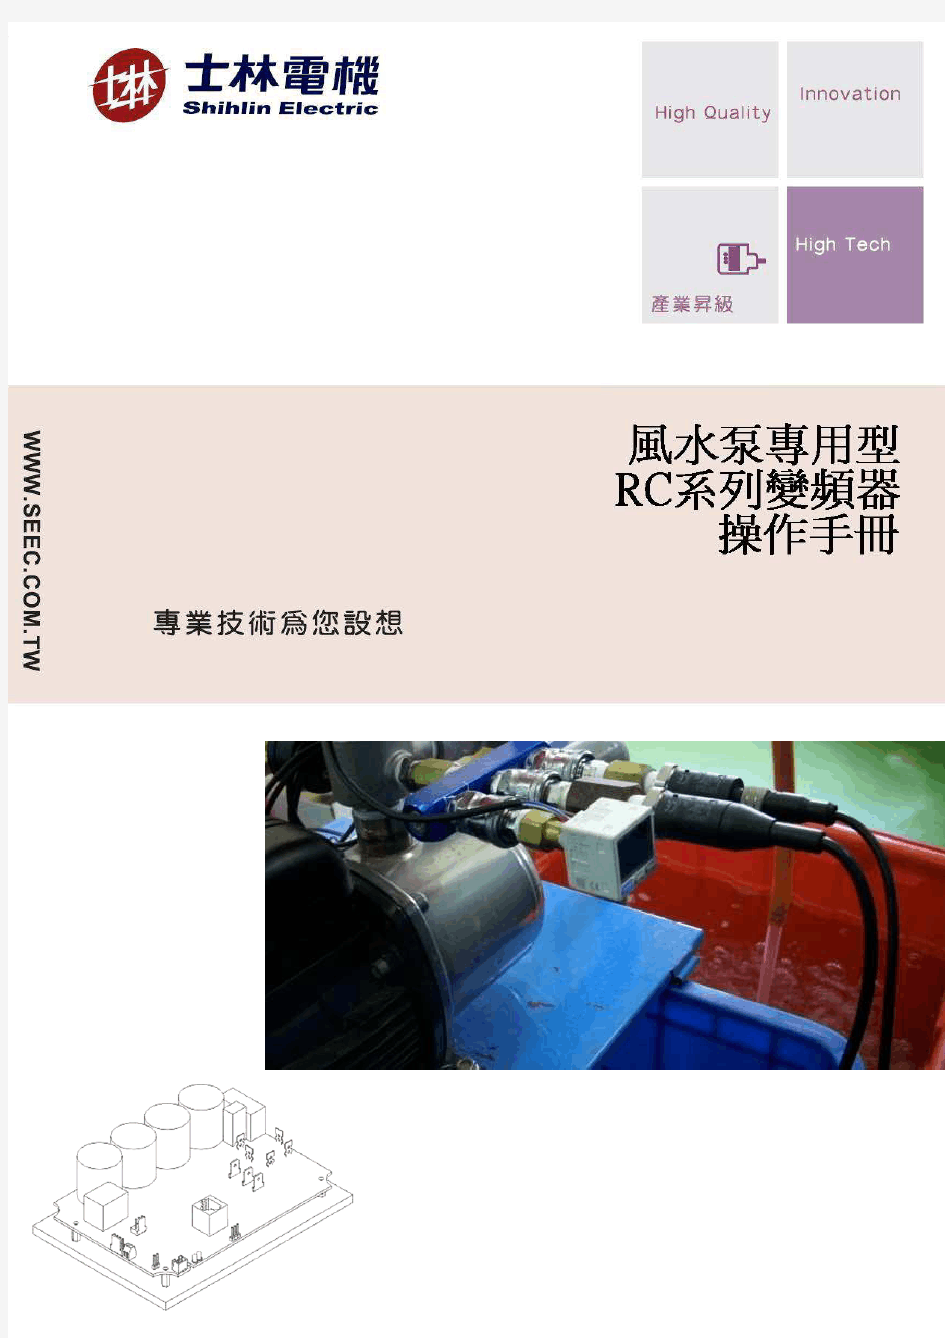 RC系列变频器说明书-中文版[1]